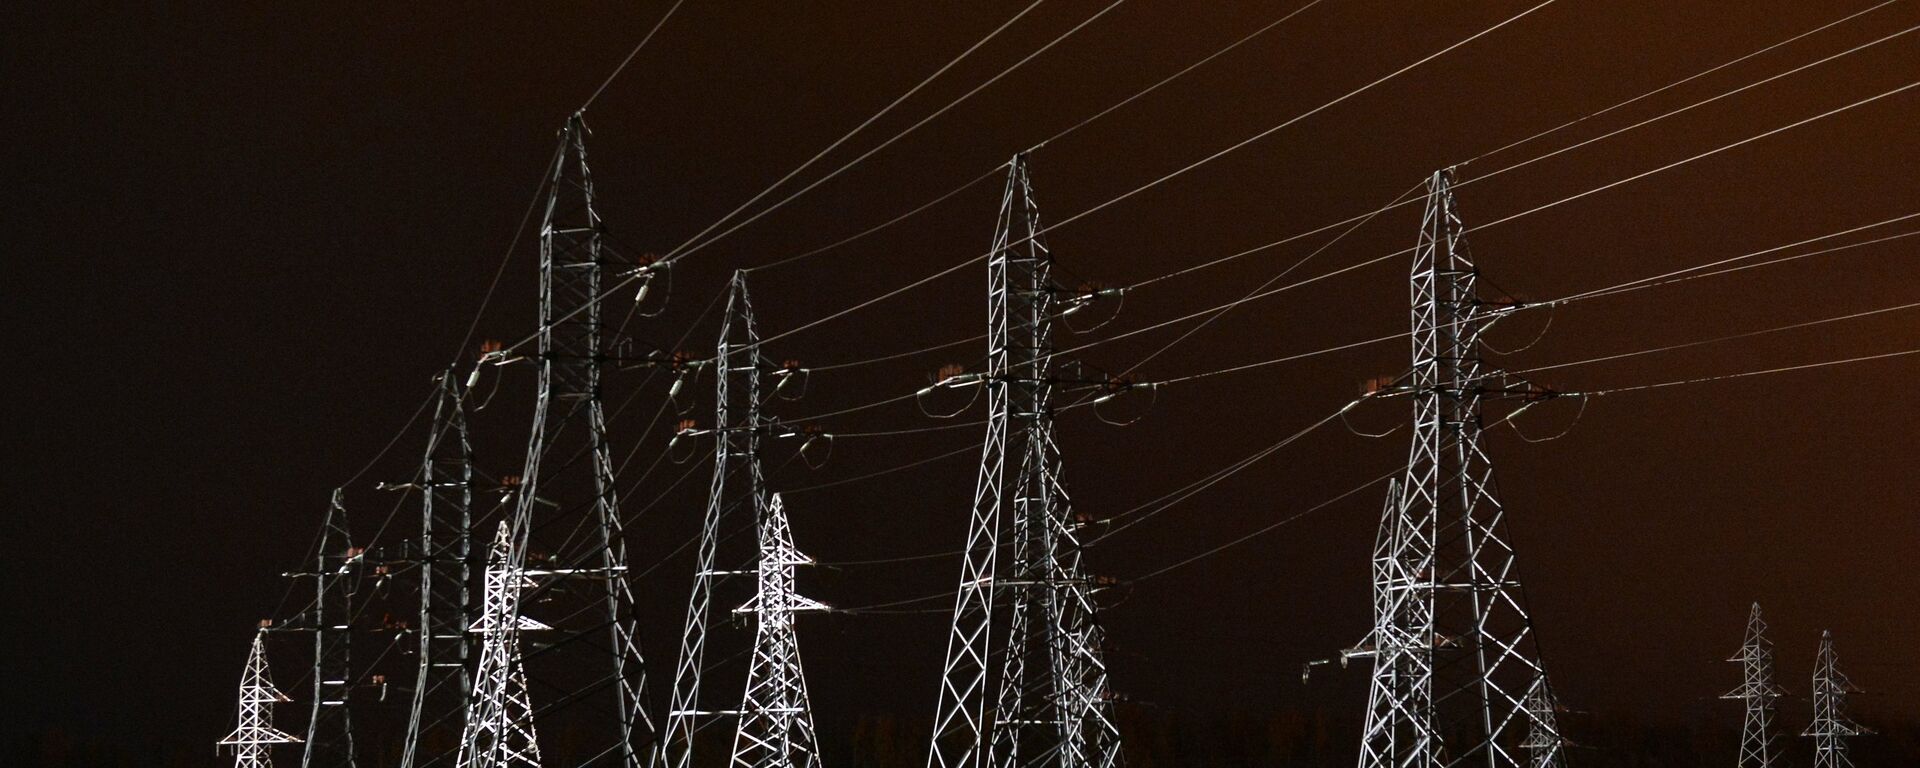 Высоковольтные линии электропередач - Sputnik Узбекистан, 1920, 04.10.2021